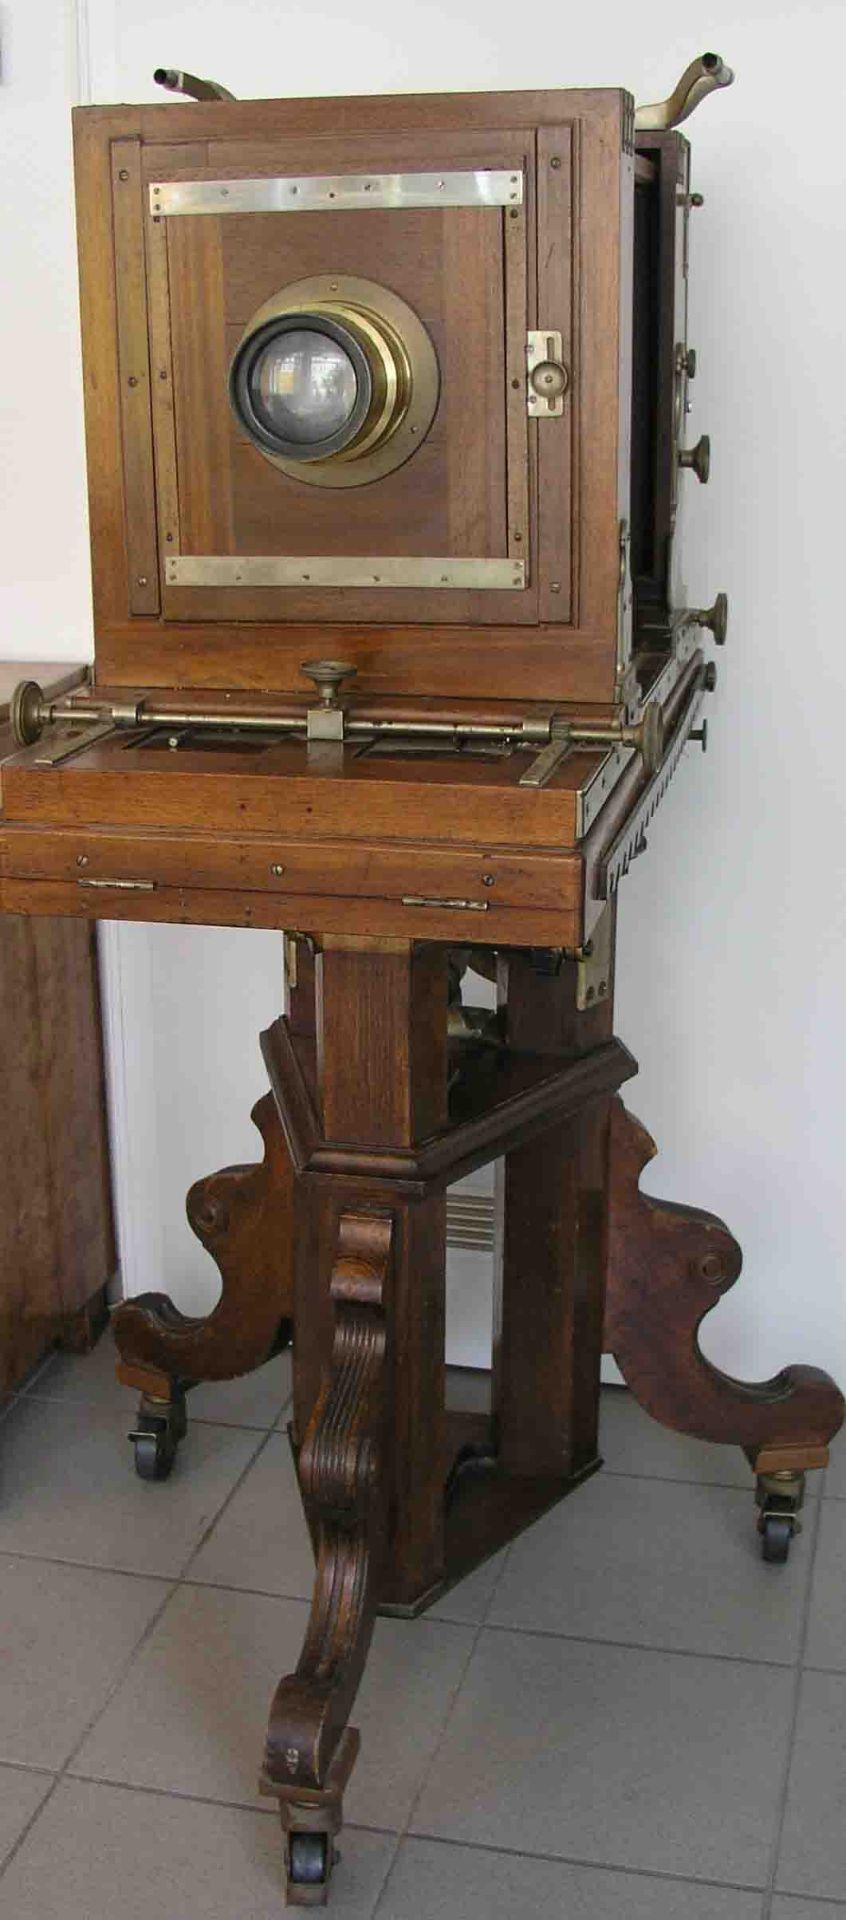 Studiokamera um 1890 auf Salonstation. Höhe: 139cm. Altersspuren, Funktion nicht geprüft. - Bild 2 aus 2